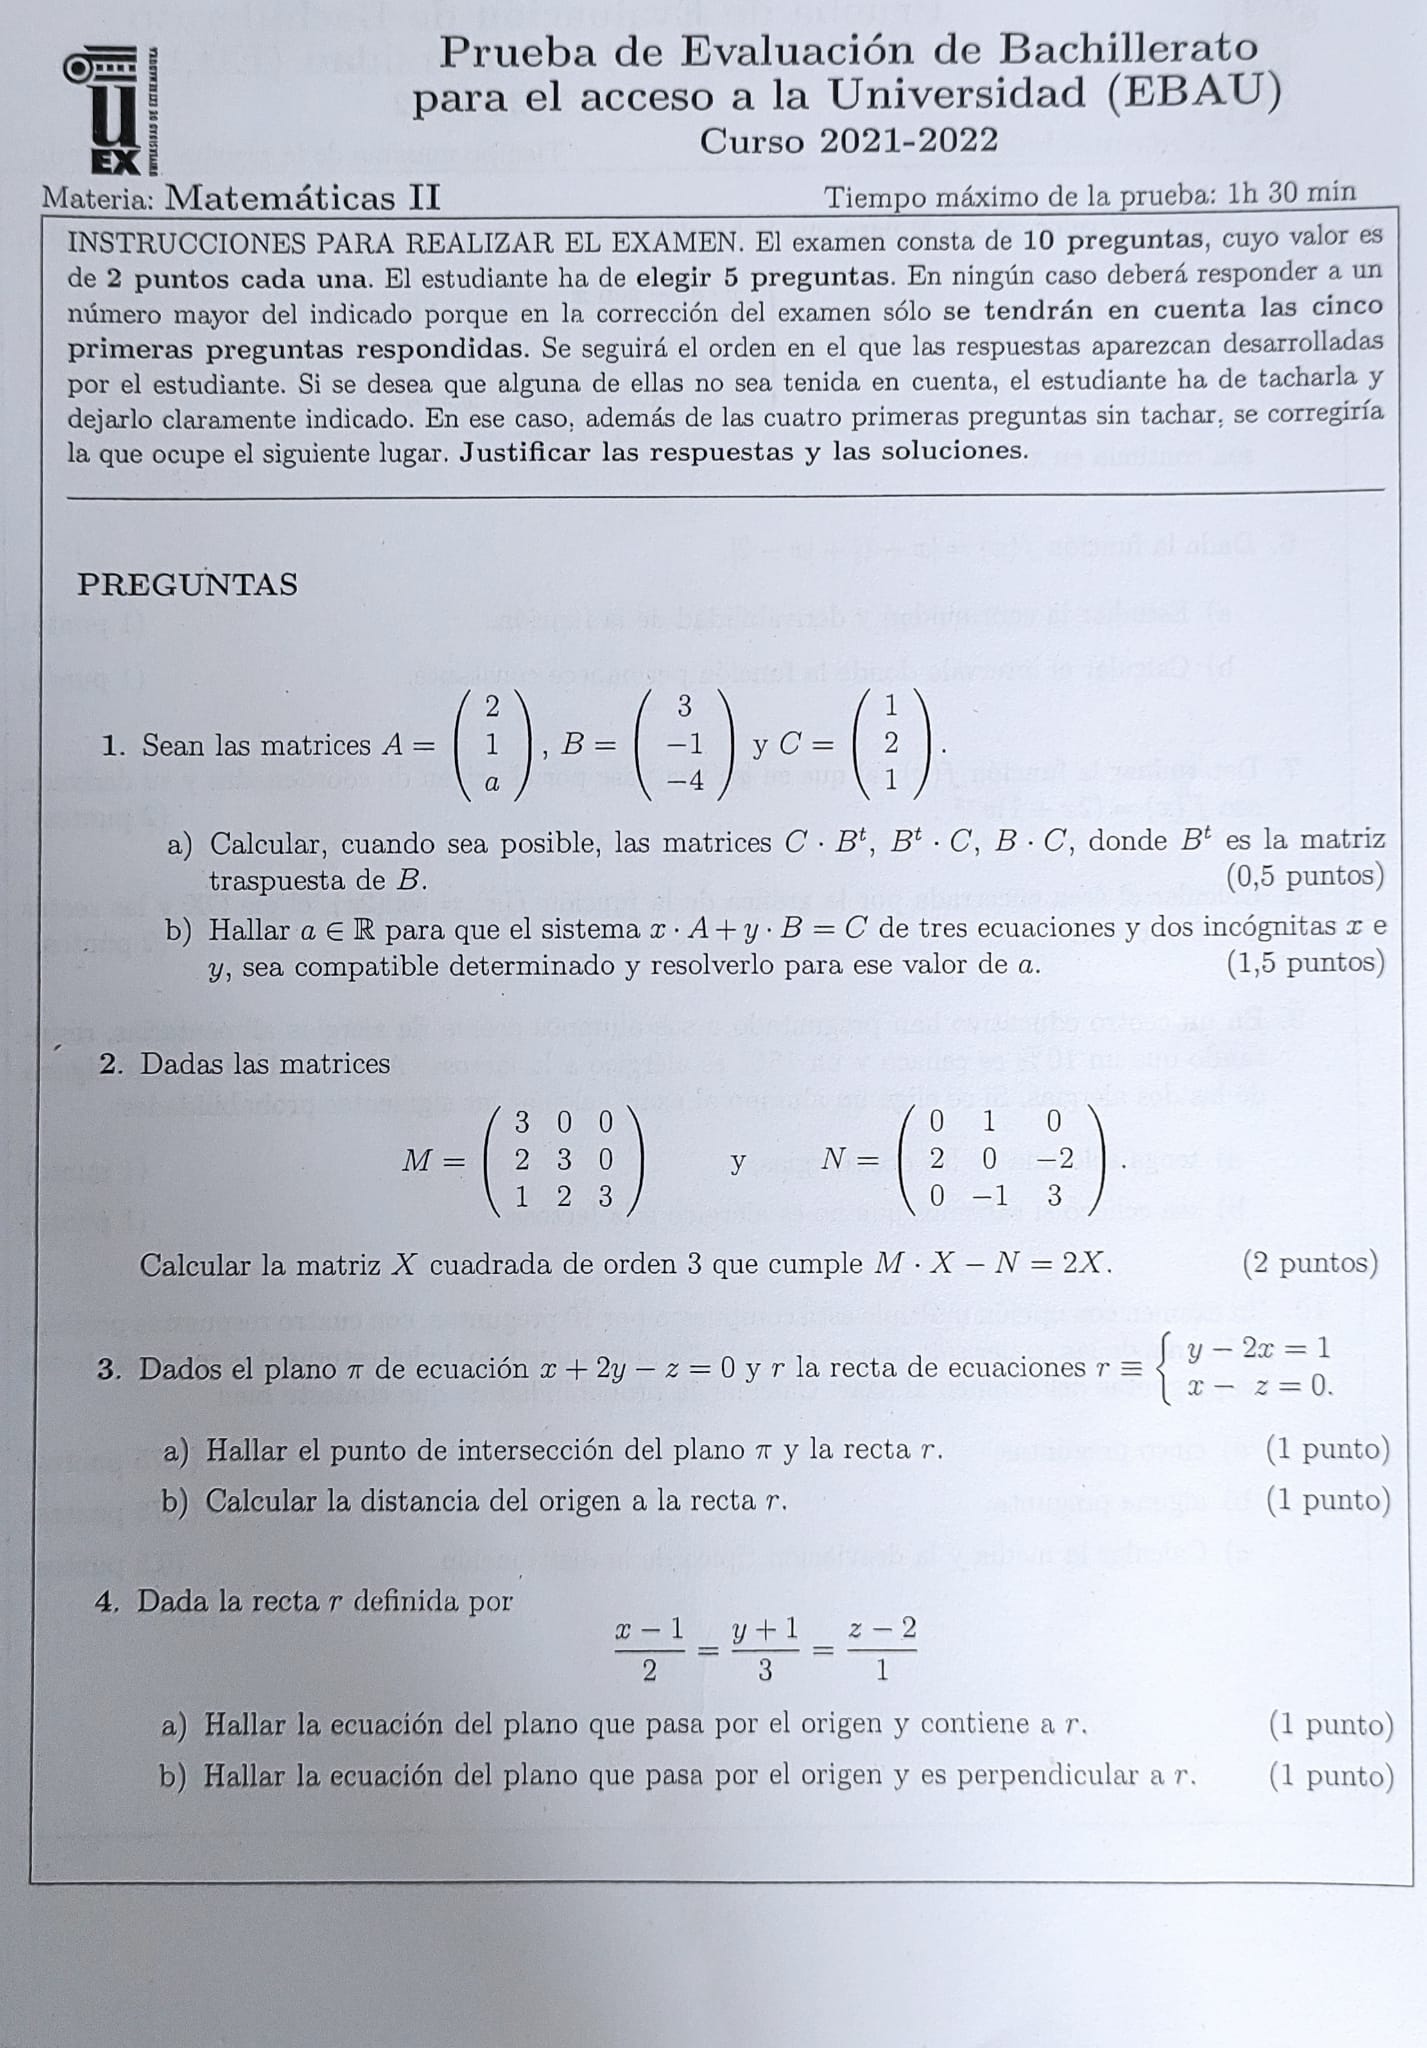 Primera parte del examen de Matemáticas de EBAU en Extremadura